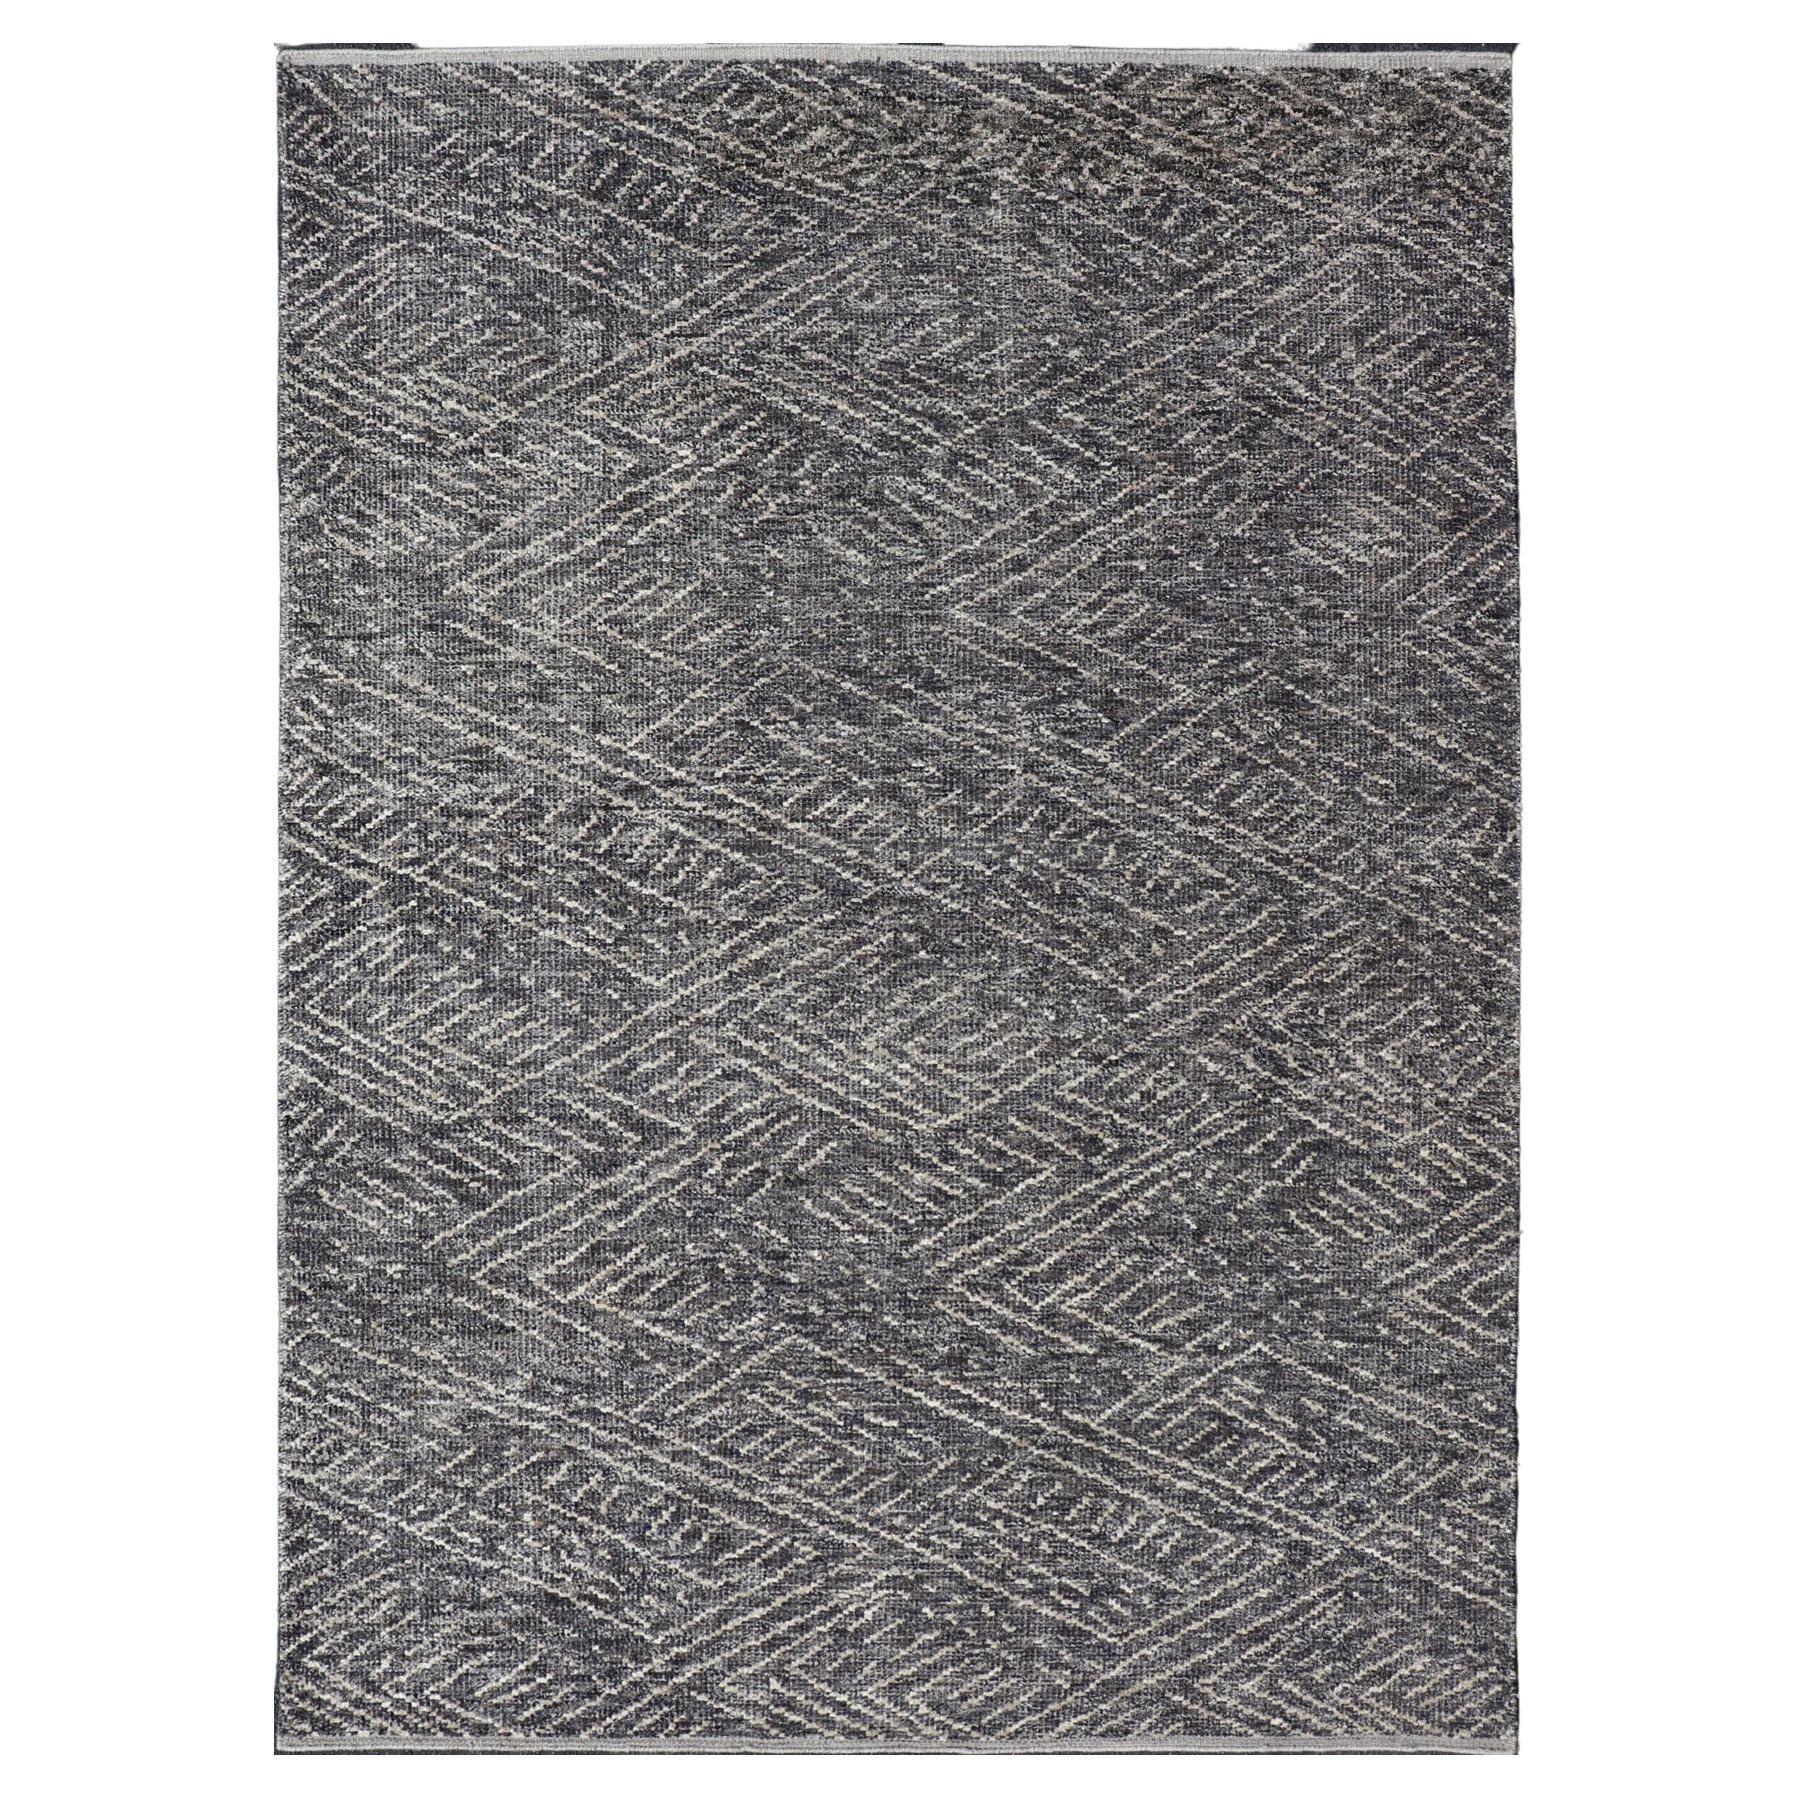 Indischer moderner grau-blauer Teppich mit minimalistischem Crosshatch-Design, indischer Stil